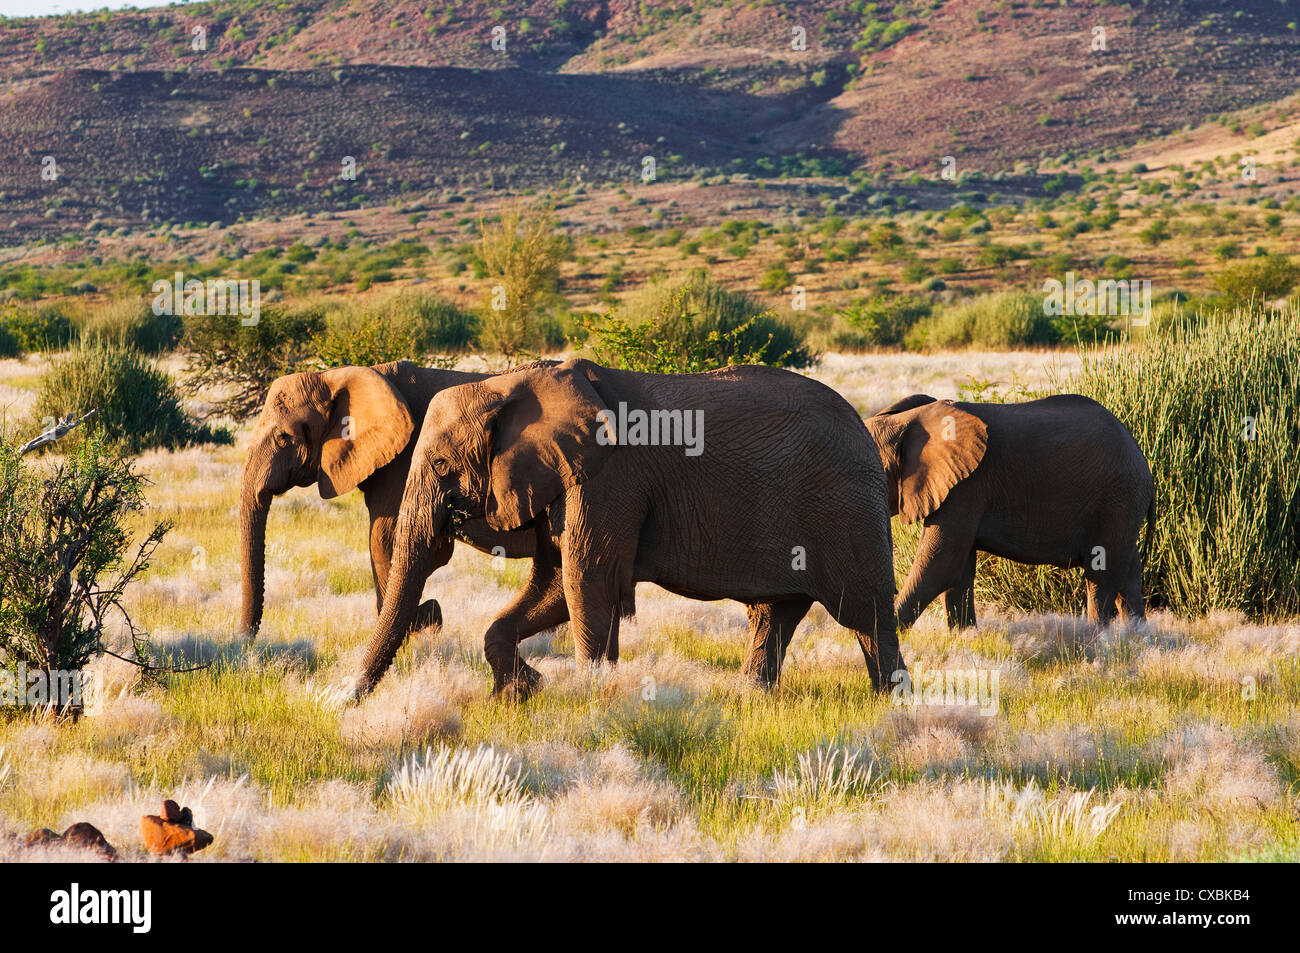 African elephant (Loxodonta africana), Damaraland, Kunene Region, Namibia, Africa Stock Photo